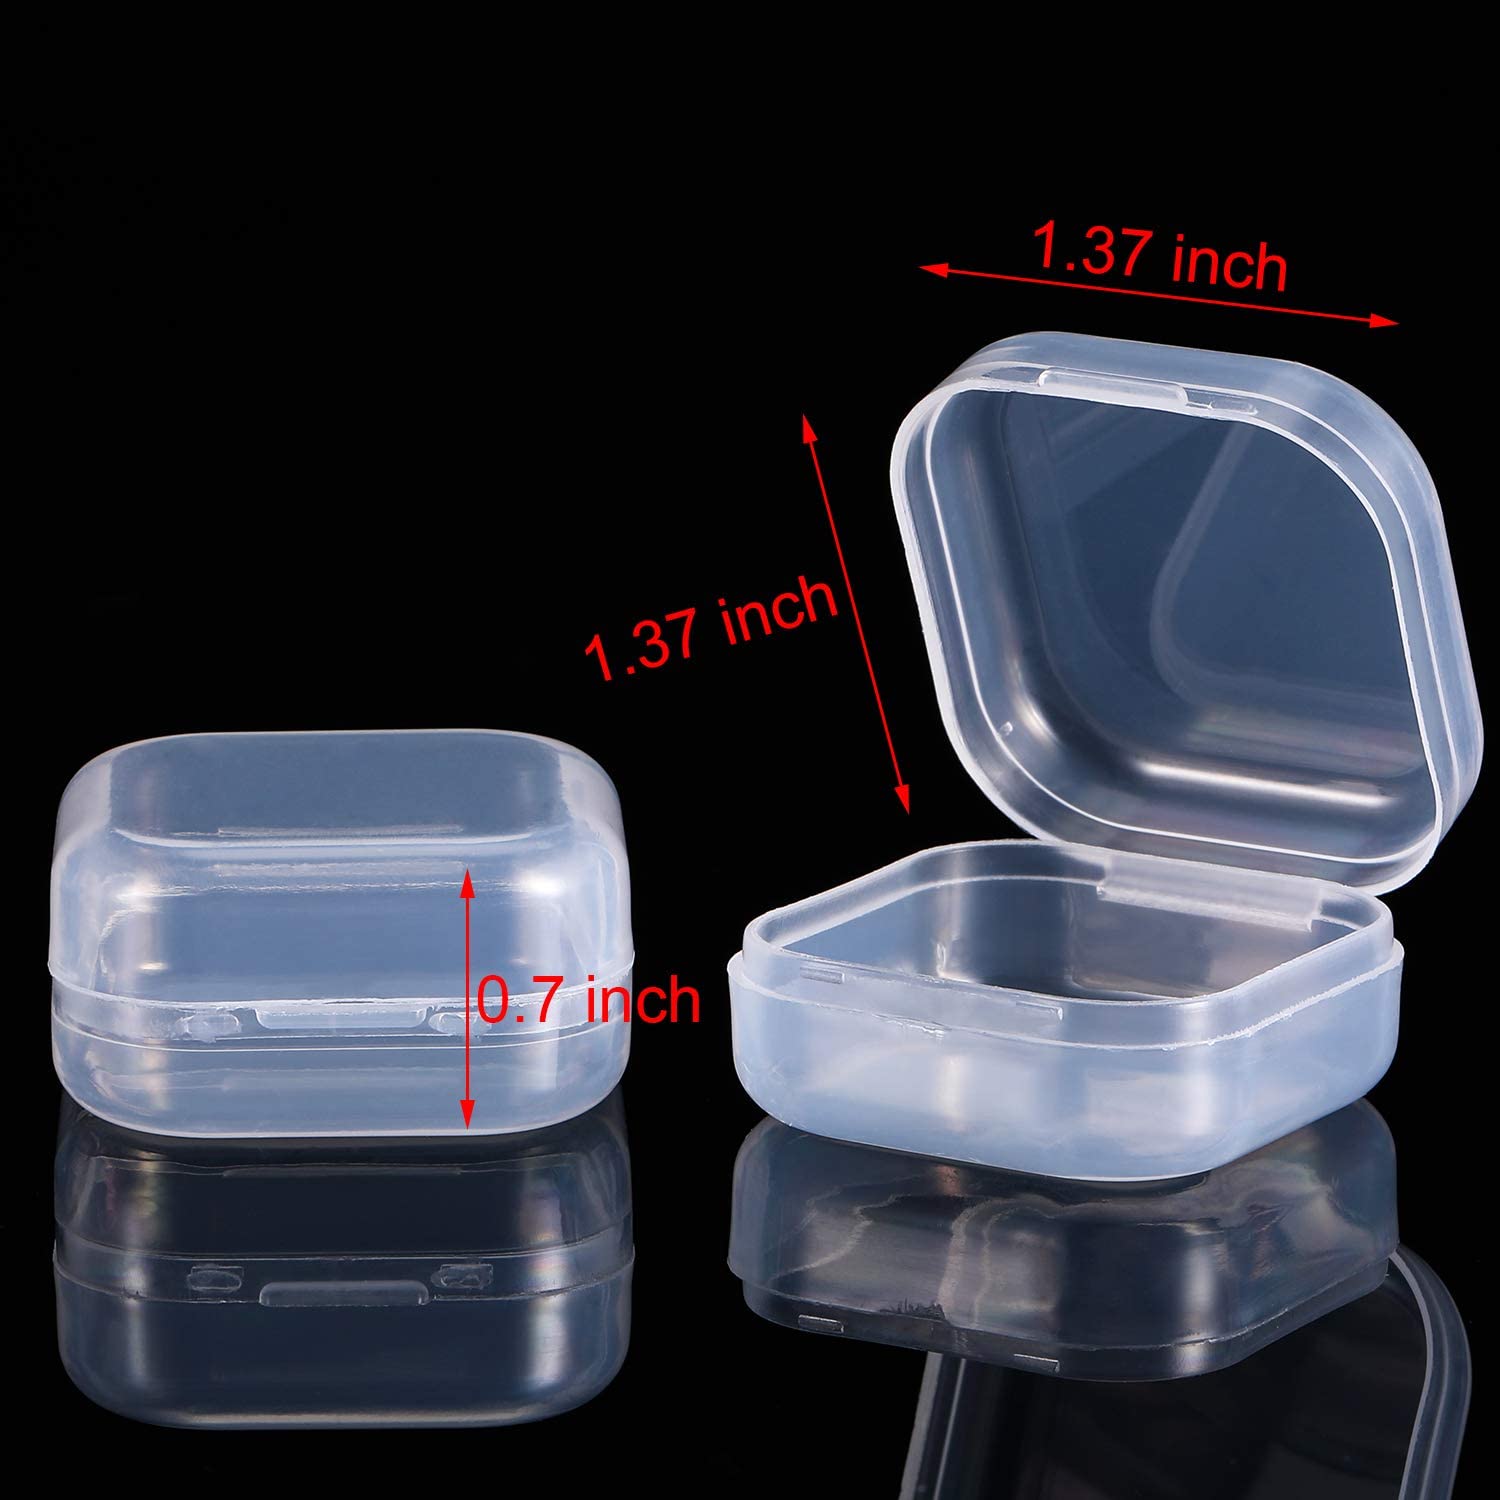 Hộp lưu trữ nút tai, Hộp đựng hạt nhựa trong suốt Hộp có nắp đậy cho nút tai, hạt và các vật dụng nhỏ khác Hộp lưu trữ trống (1,37 x 1,37 x 0,7 inch) 1 chiếc / 5 chiếc